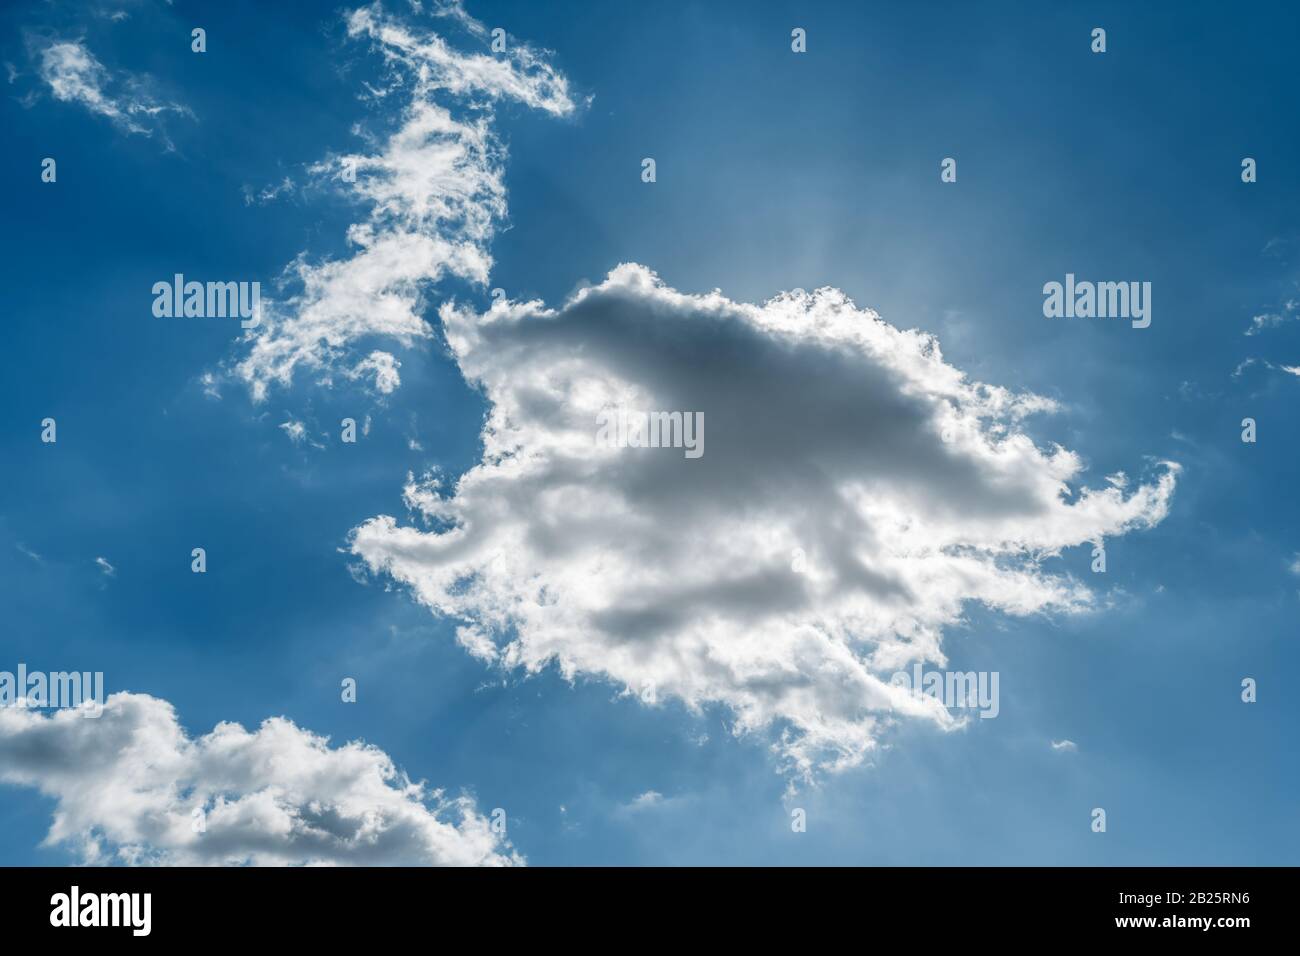 Ciel bleu et soleil brillant à travers le nuage, couleur ajustée pour s'adapter à Pantone 19-4052 Bleu classique, couleur de l'année 2020. Couleur Pantone de l'année 2020. Banque D'Images